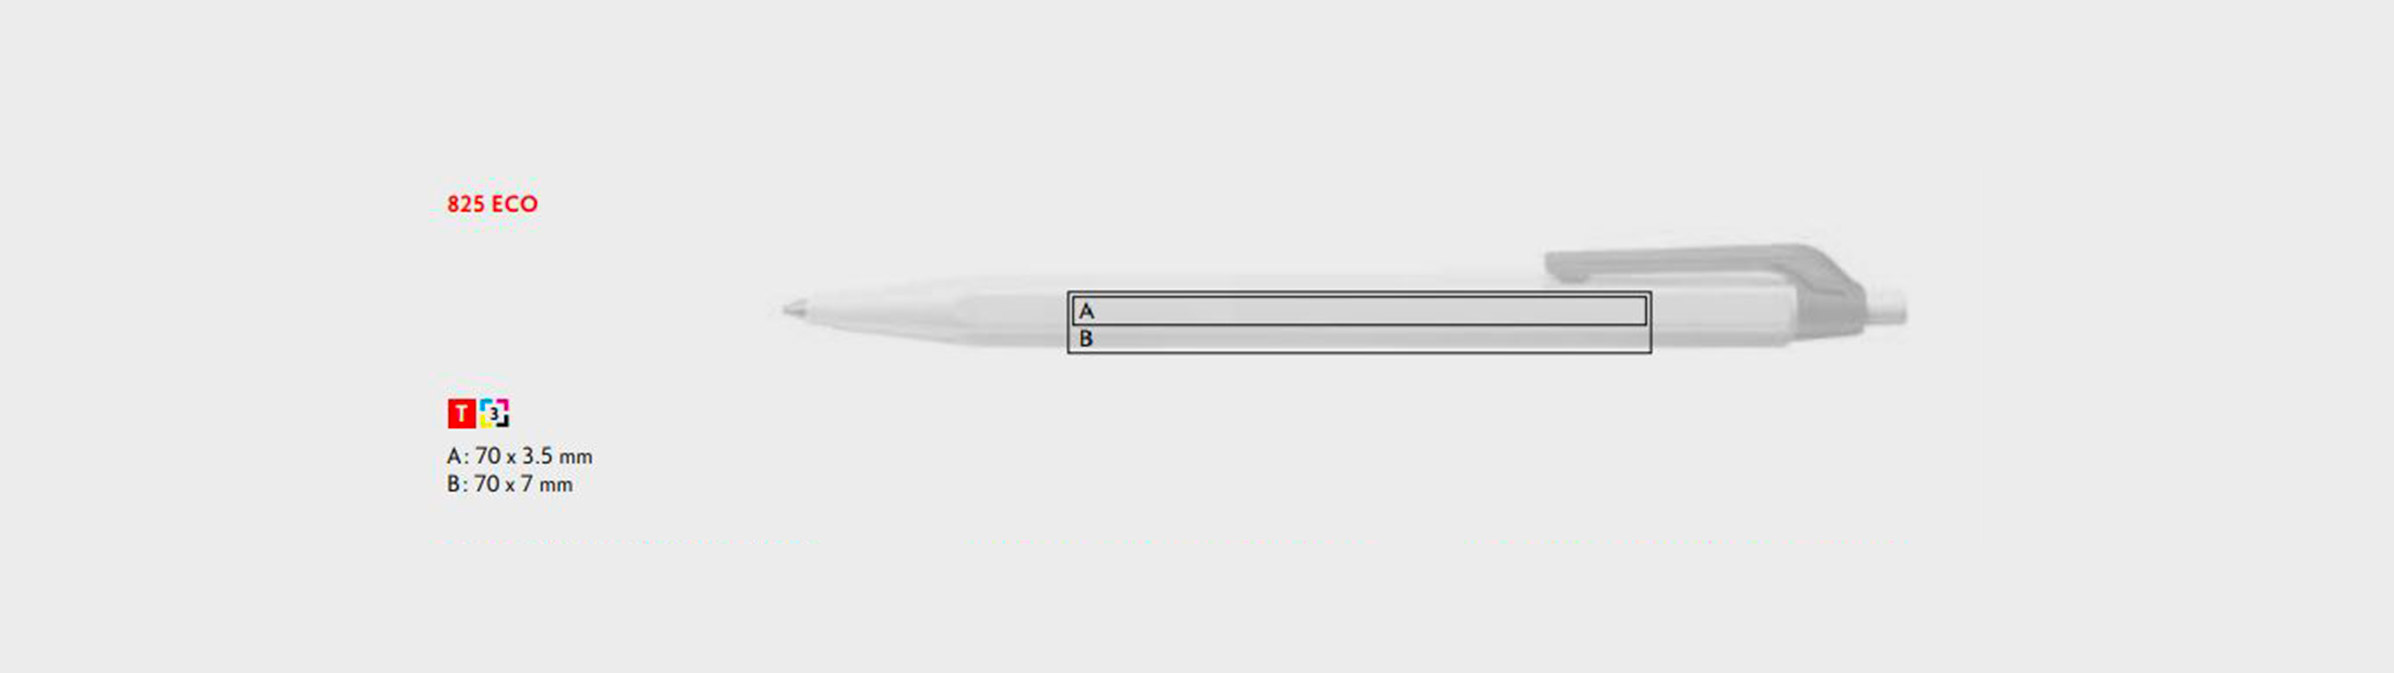 Druckflaechen Kugelschreiber Eco 825